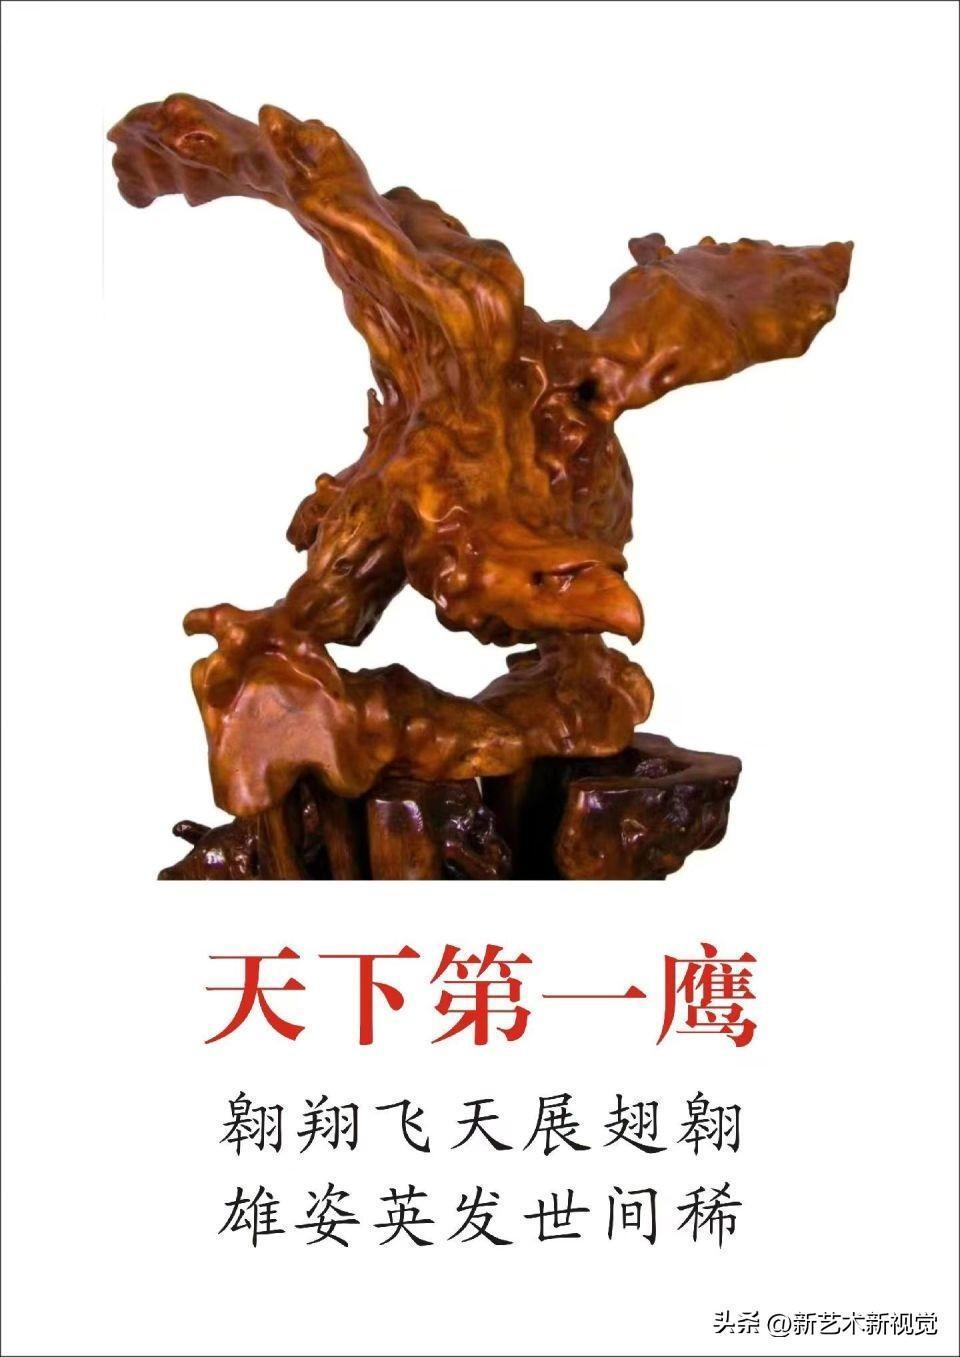 中国最具影响力艺术名家典范·李有光特别报道(图6)